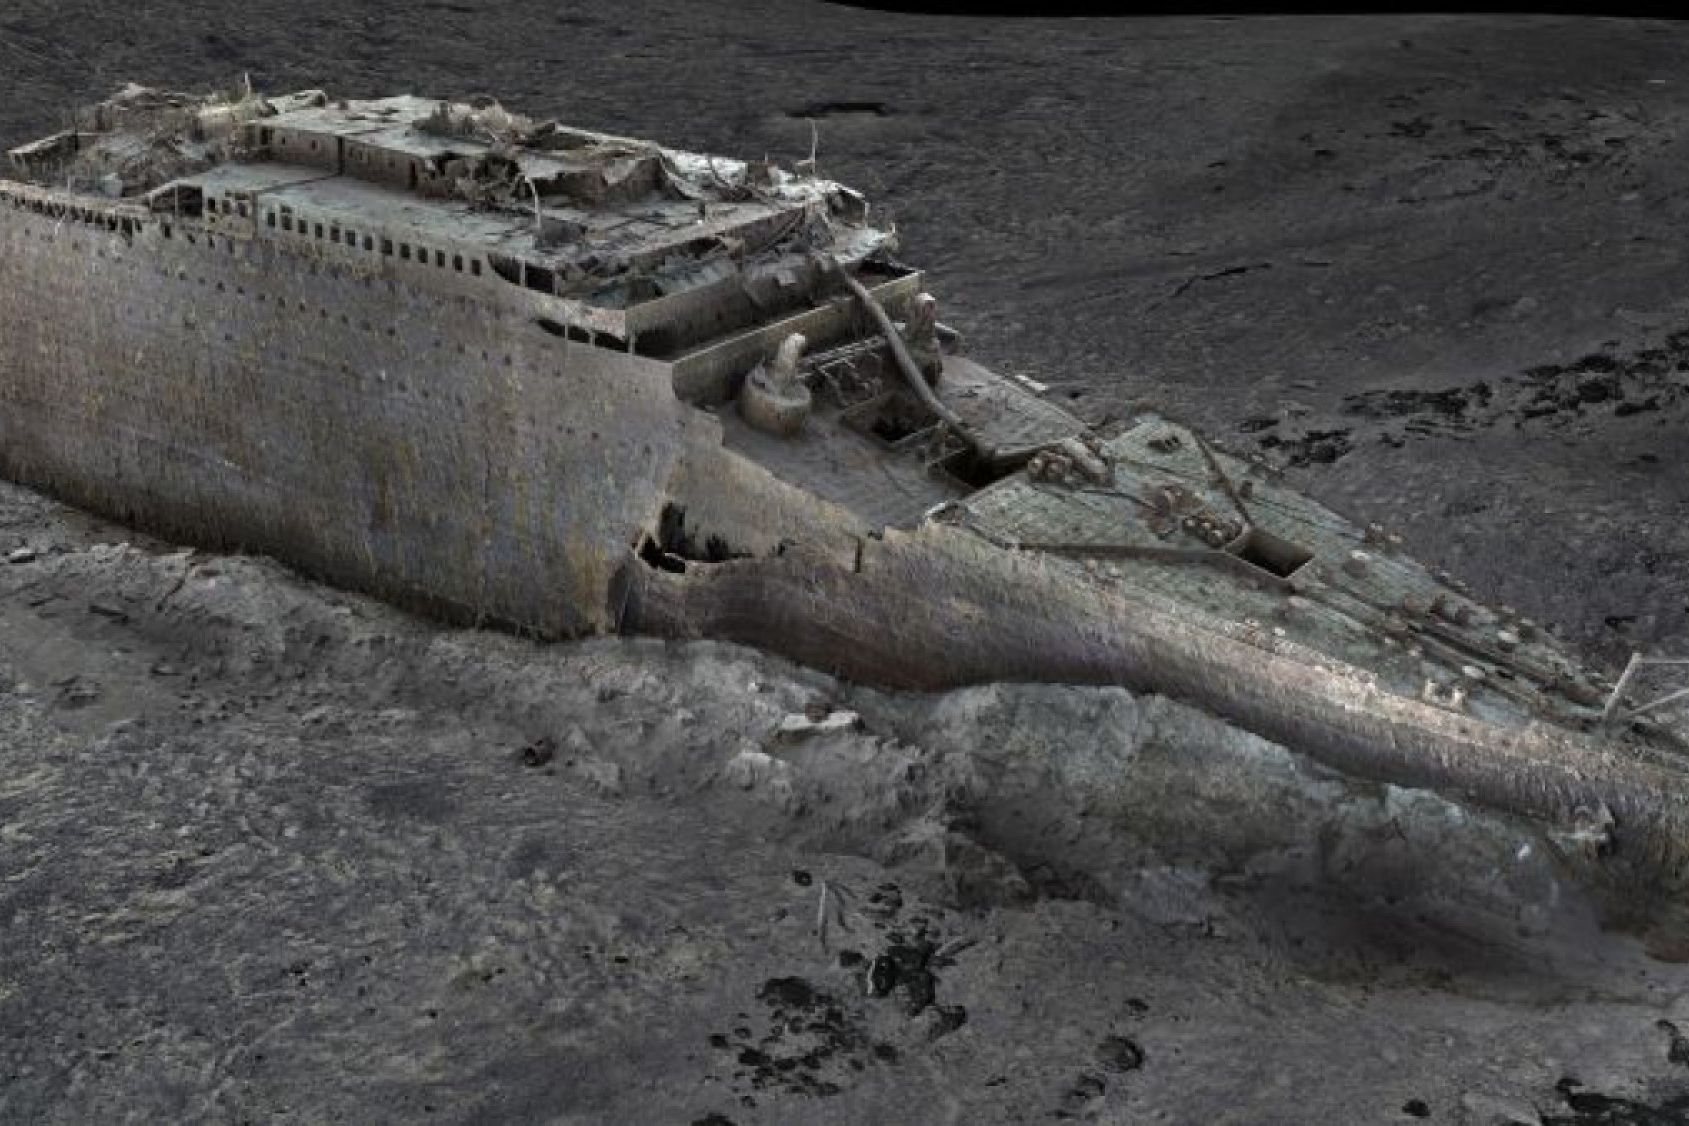 Pertama Kali sejak Ditemukan, Bangkai Kapal Titanic Bisa Dilihat Utuh dan Jelas